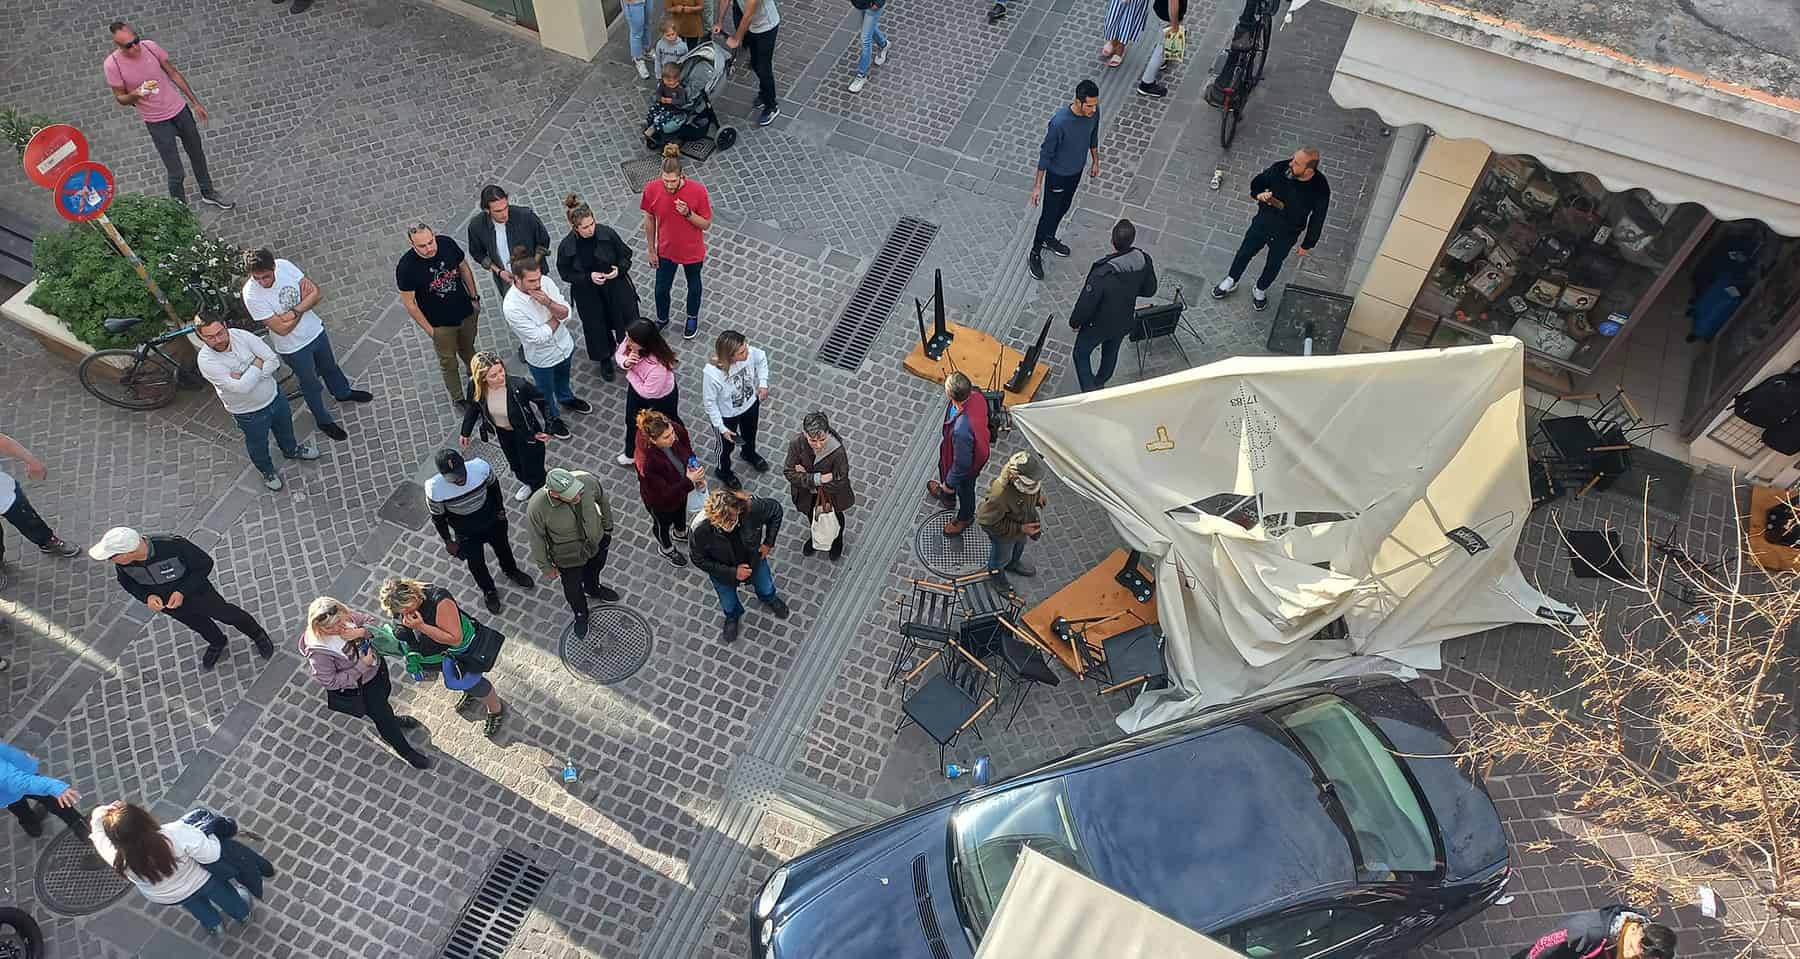 Πανικός στα Χανιά – Αυτοκίνητο “μπούκαρε” σε καφετέρια στον πεζόδρομο στην Παλιά Πόλη (φωτο)